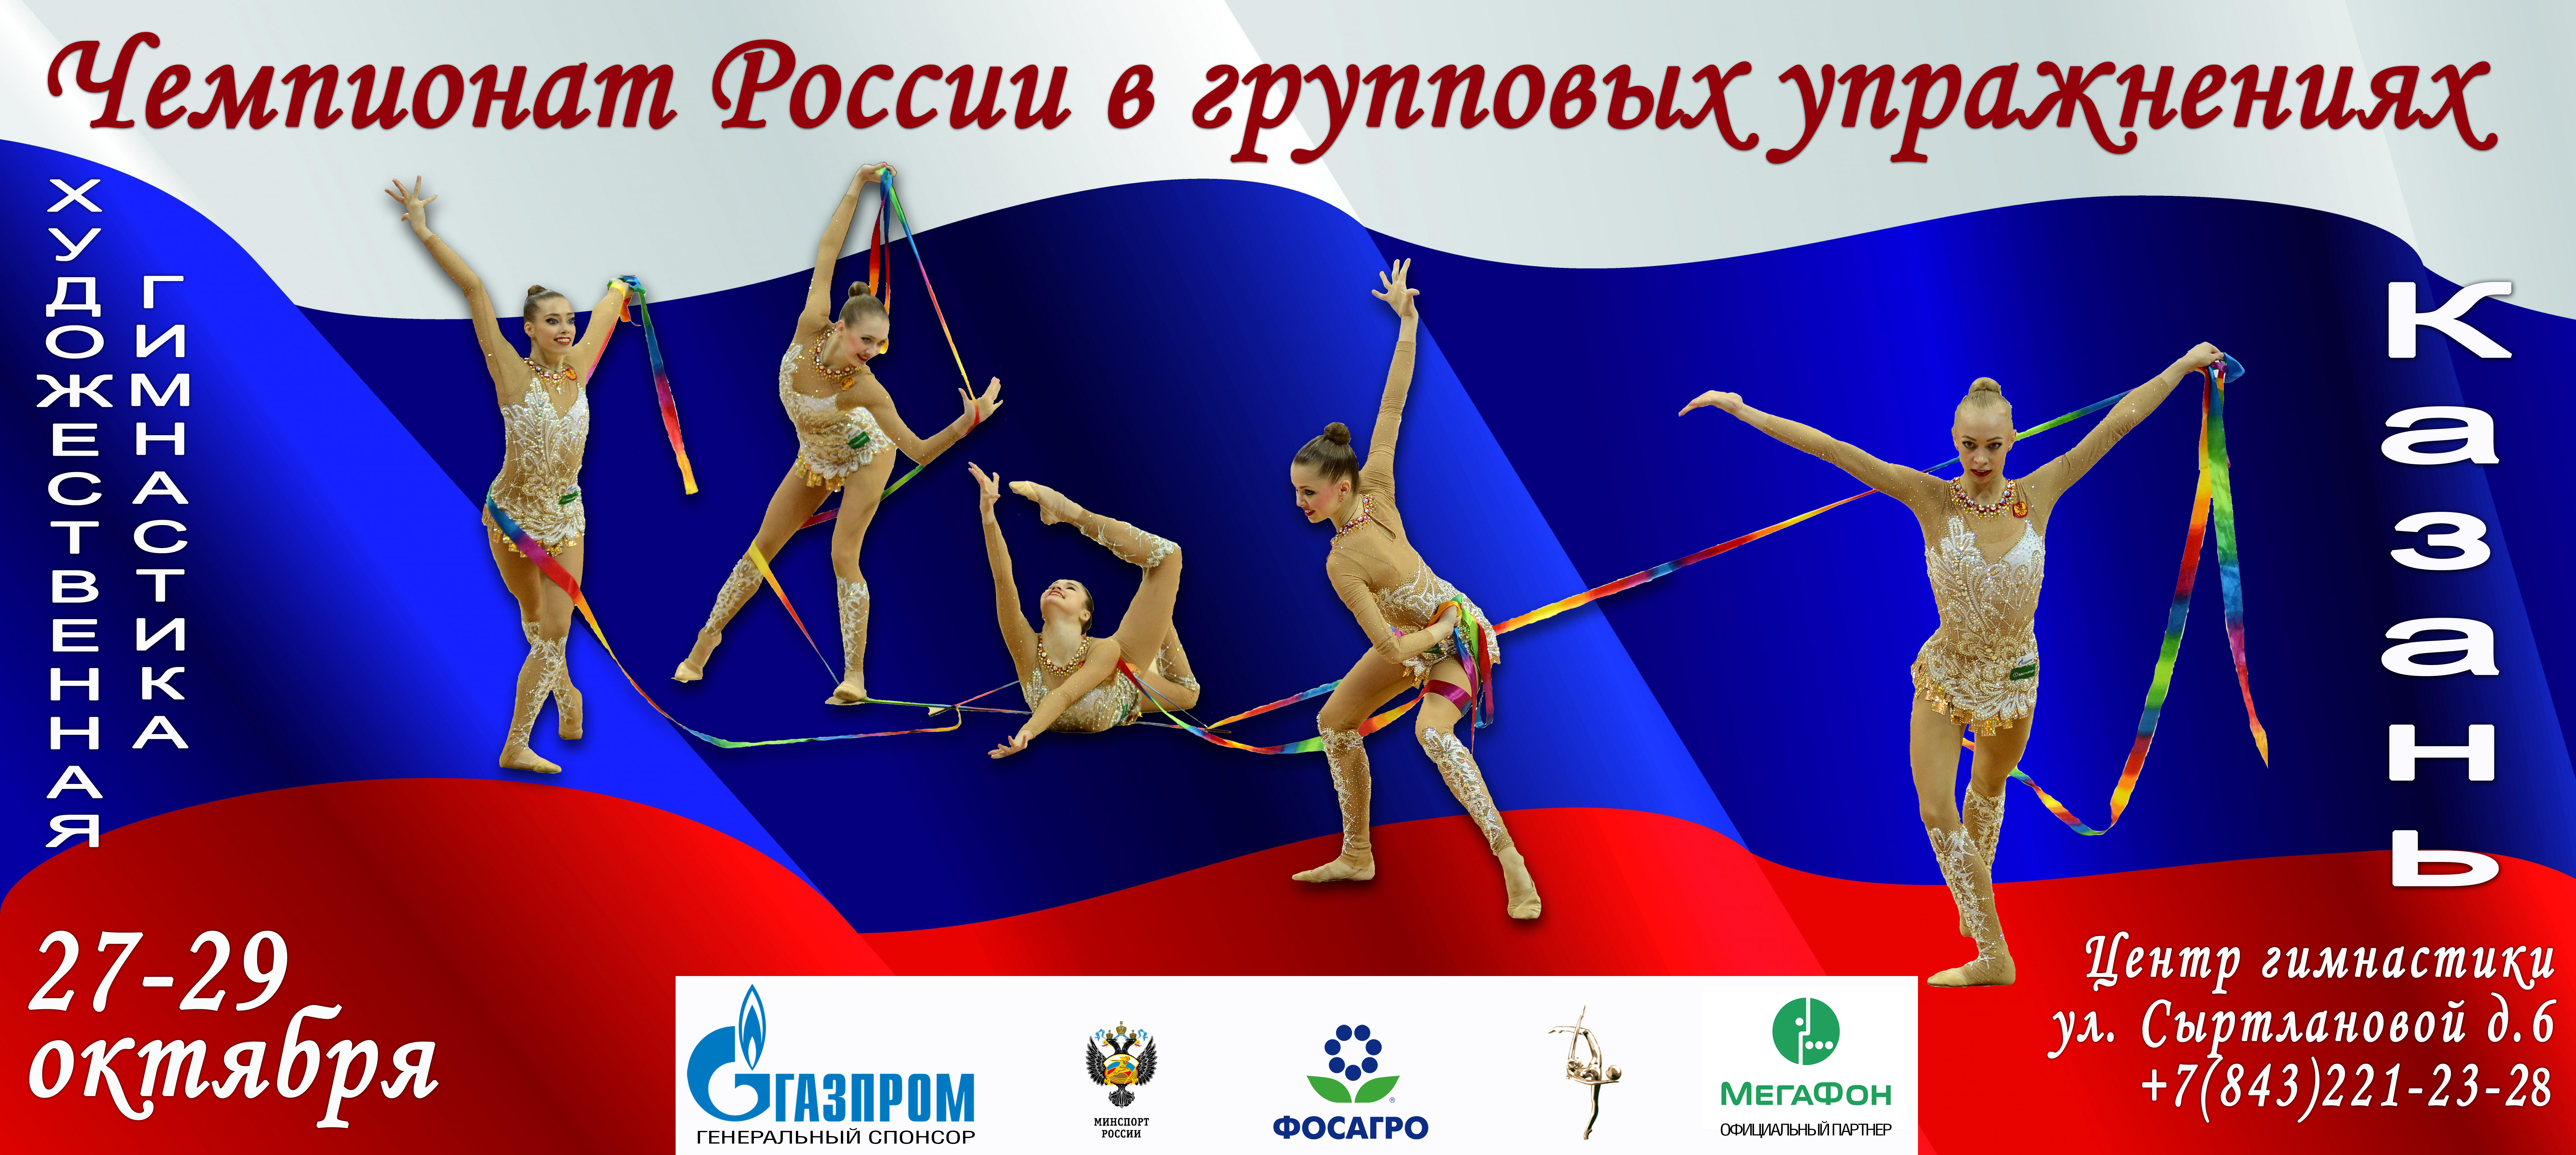 Чемпионат России в групповых упражнениях